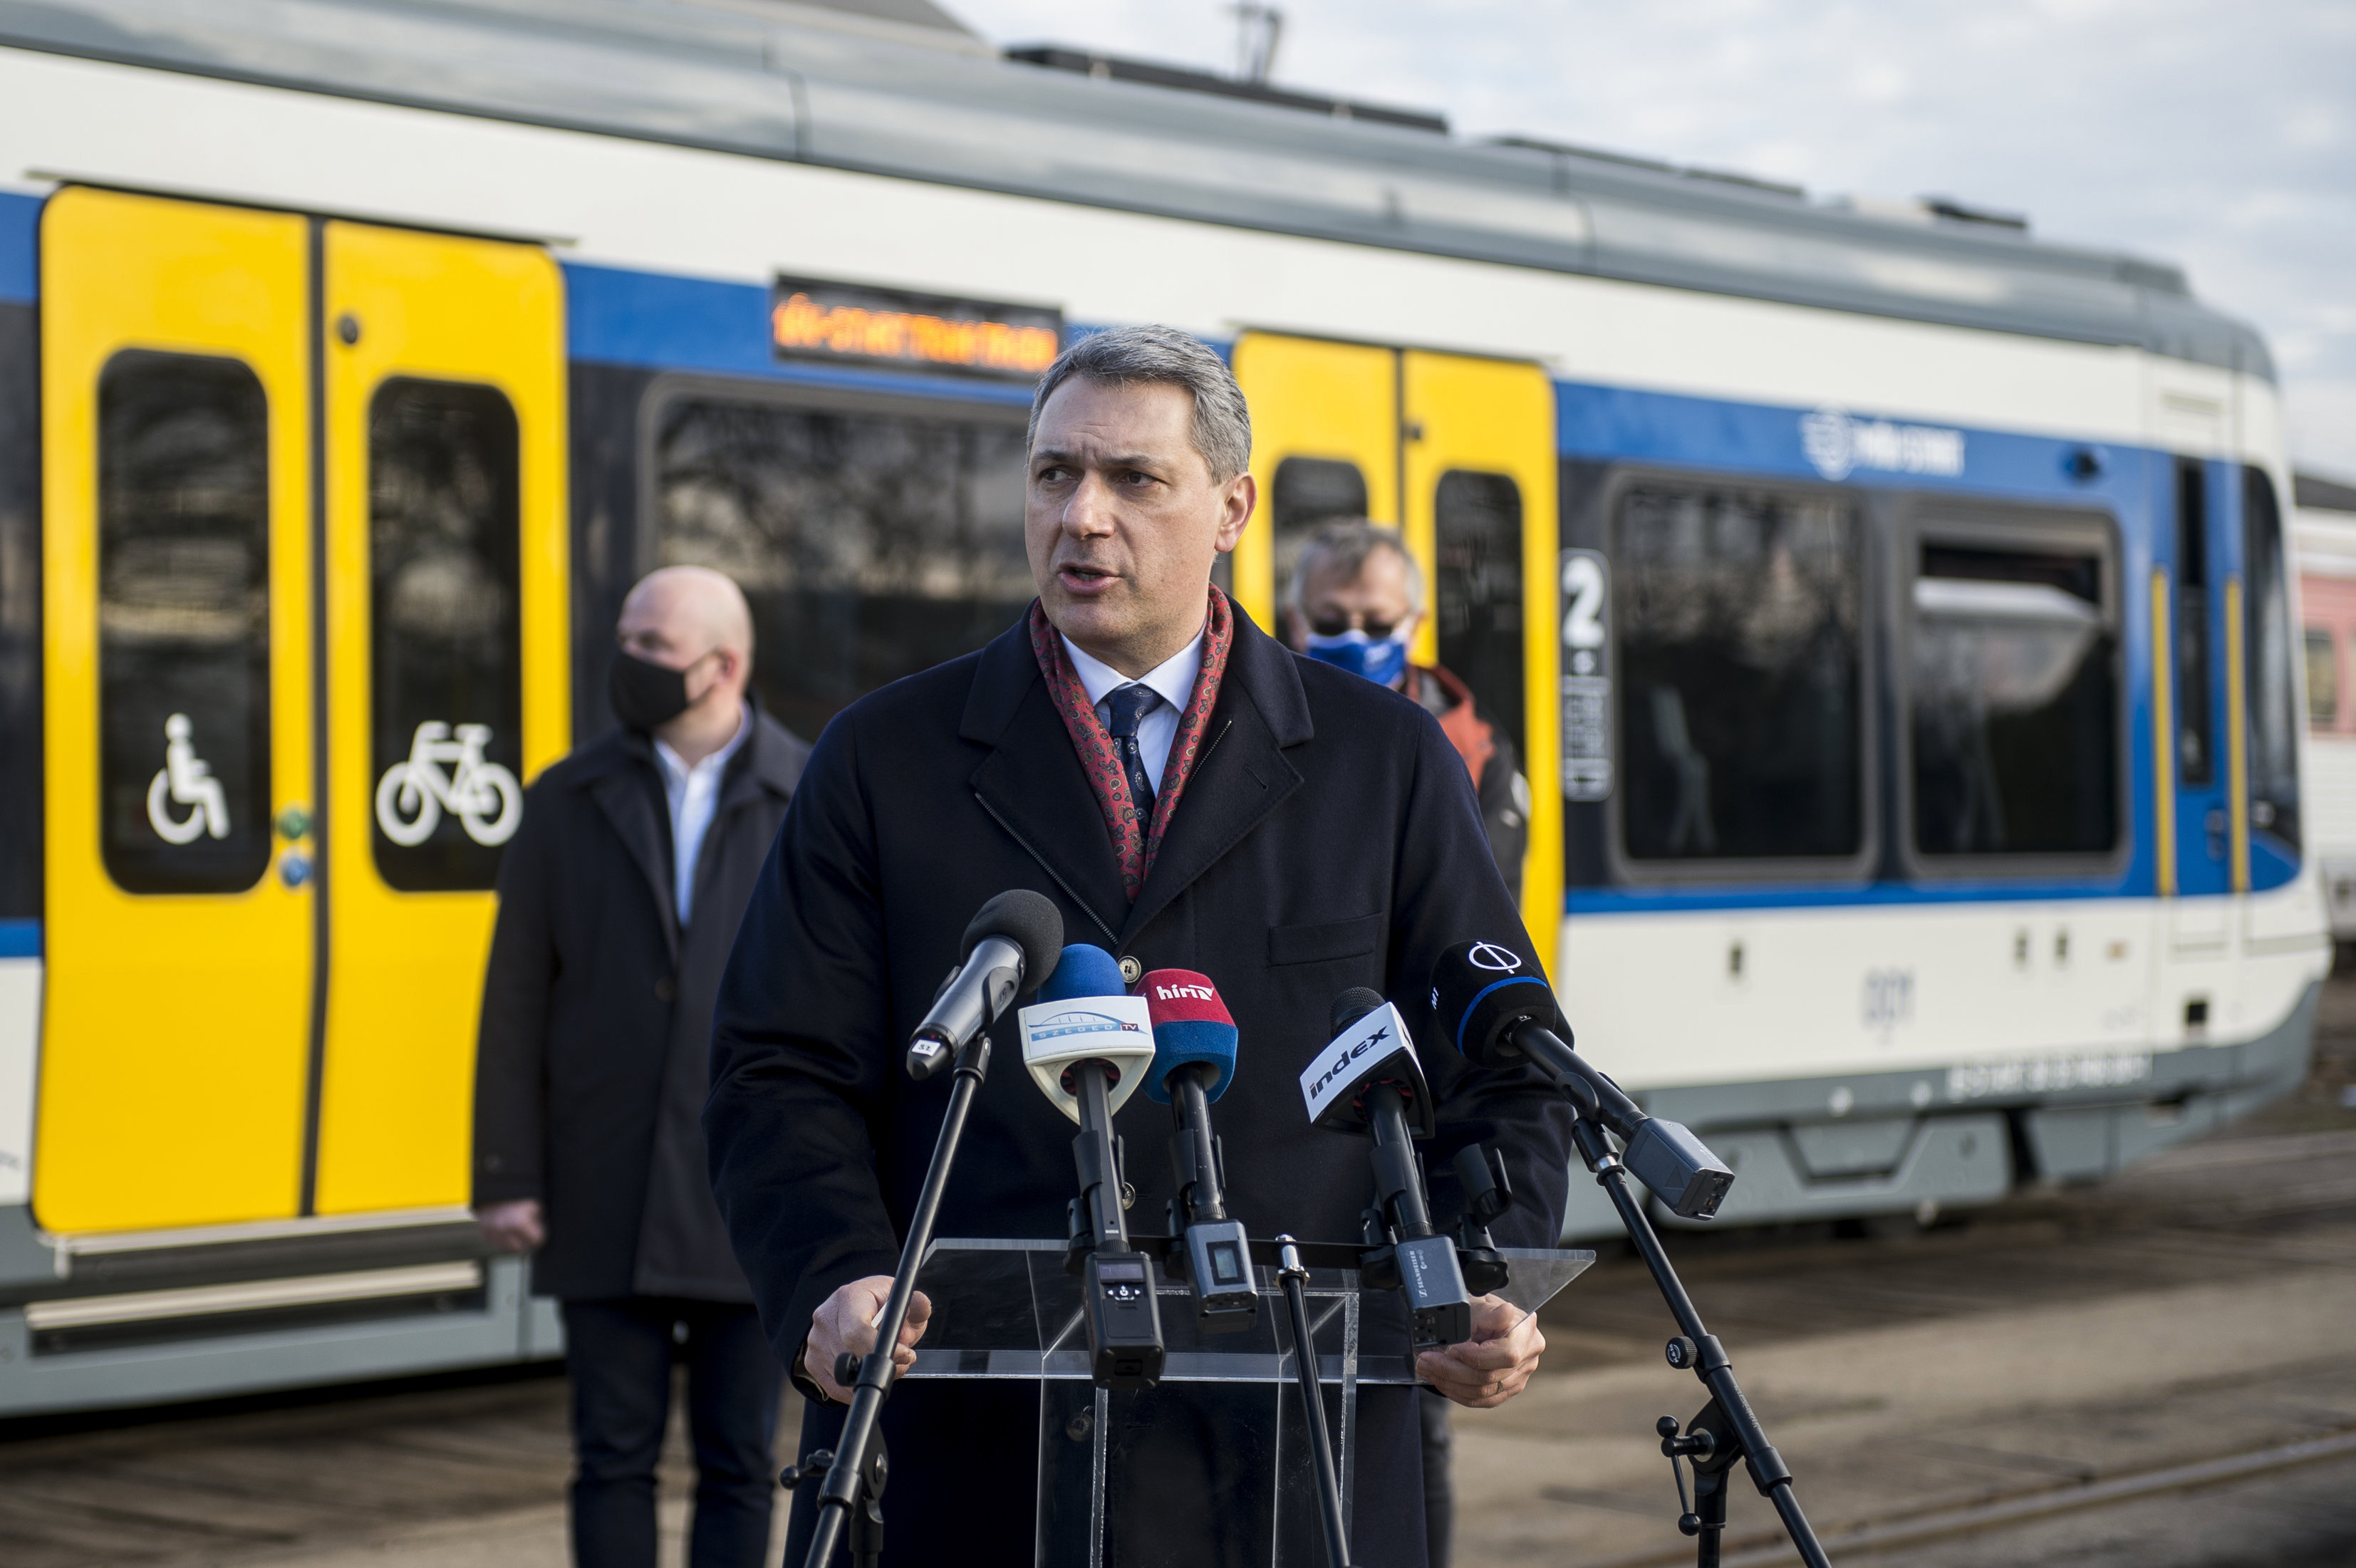 Lázár János beszédet tart a Hódmezővásárhely-Szeged közötti tram-train átadásán